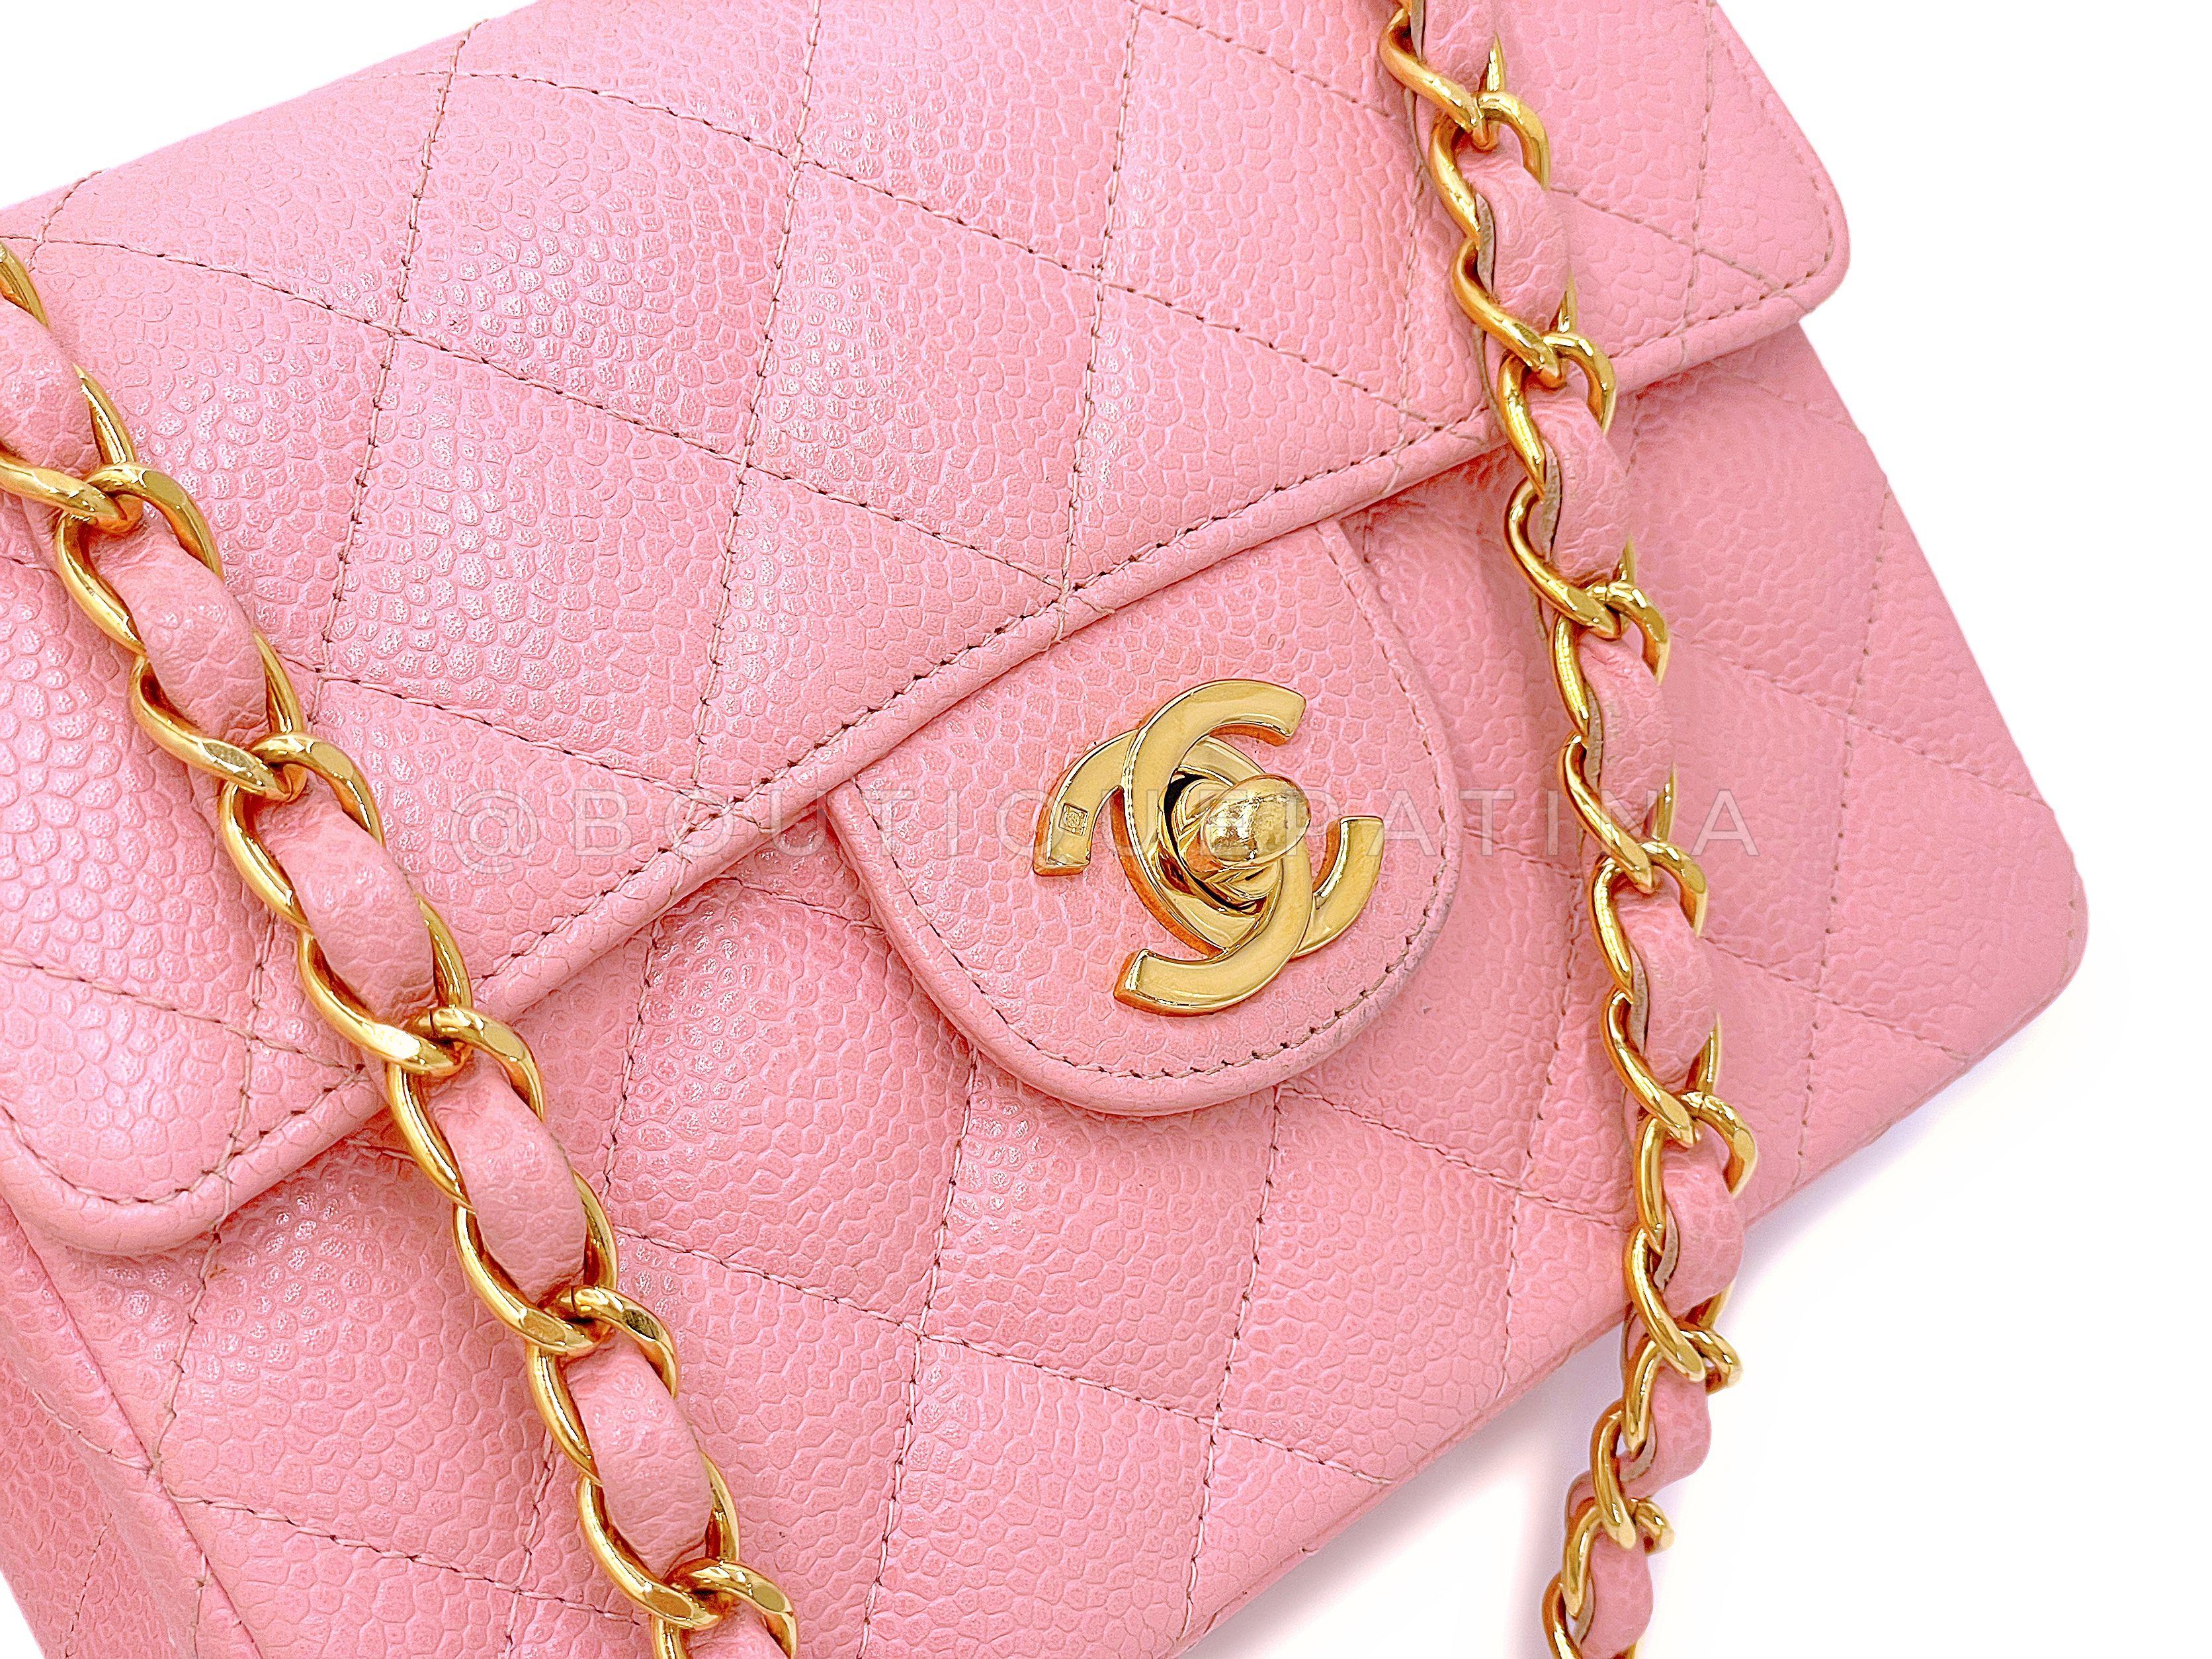 Chanel 2004 Vintage Sakura Pink Square Mini Flap Bag 24k GHW 67727 For Sale 4